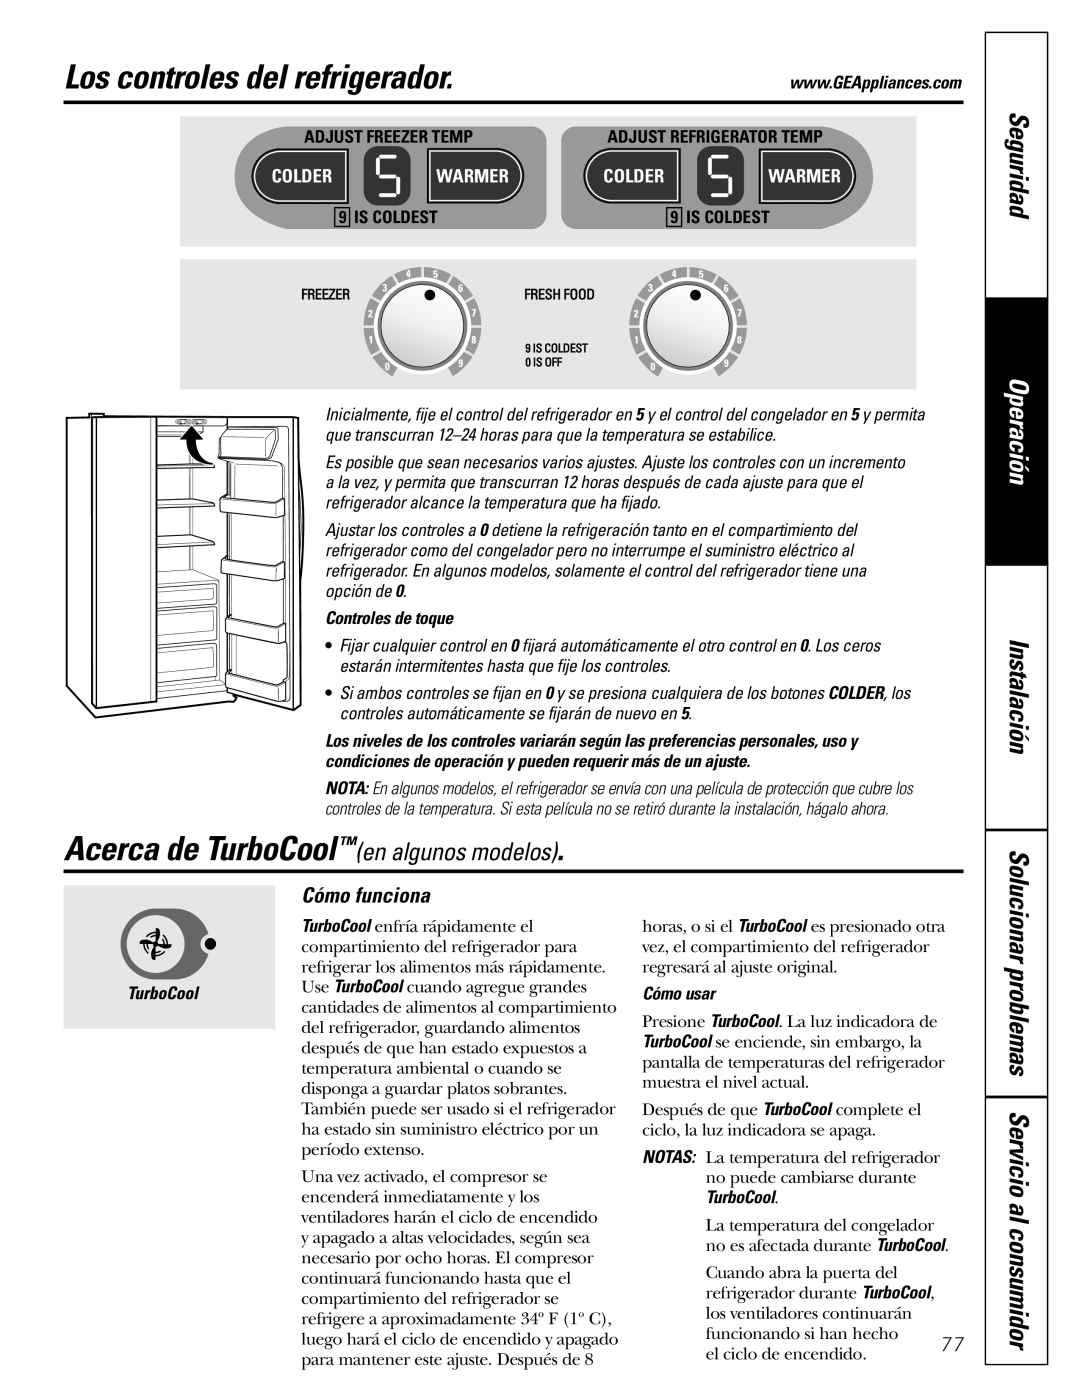 GE Monogram 23 Los controles del refrigerador, Acerca de TurboCoolen algunos modelos, Seguridad, Operación, Instalación 